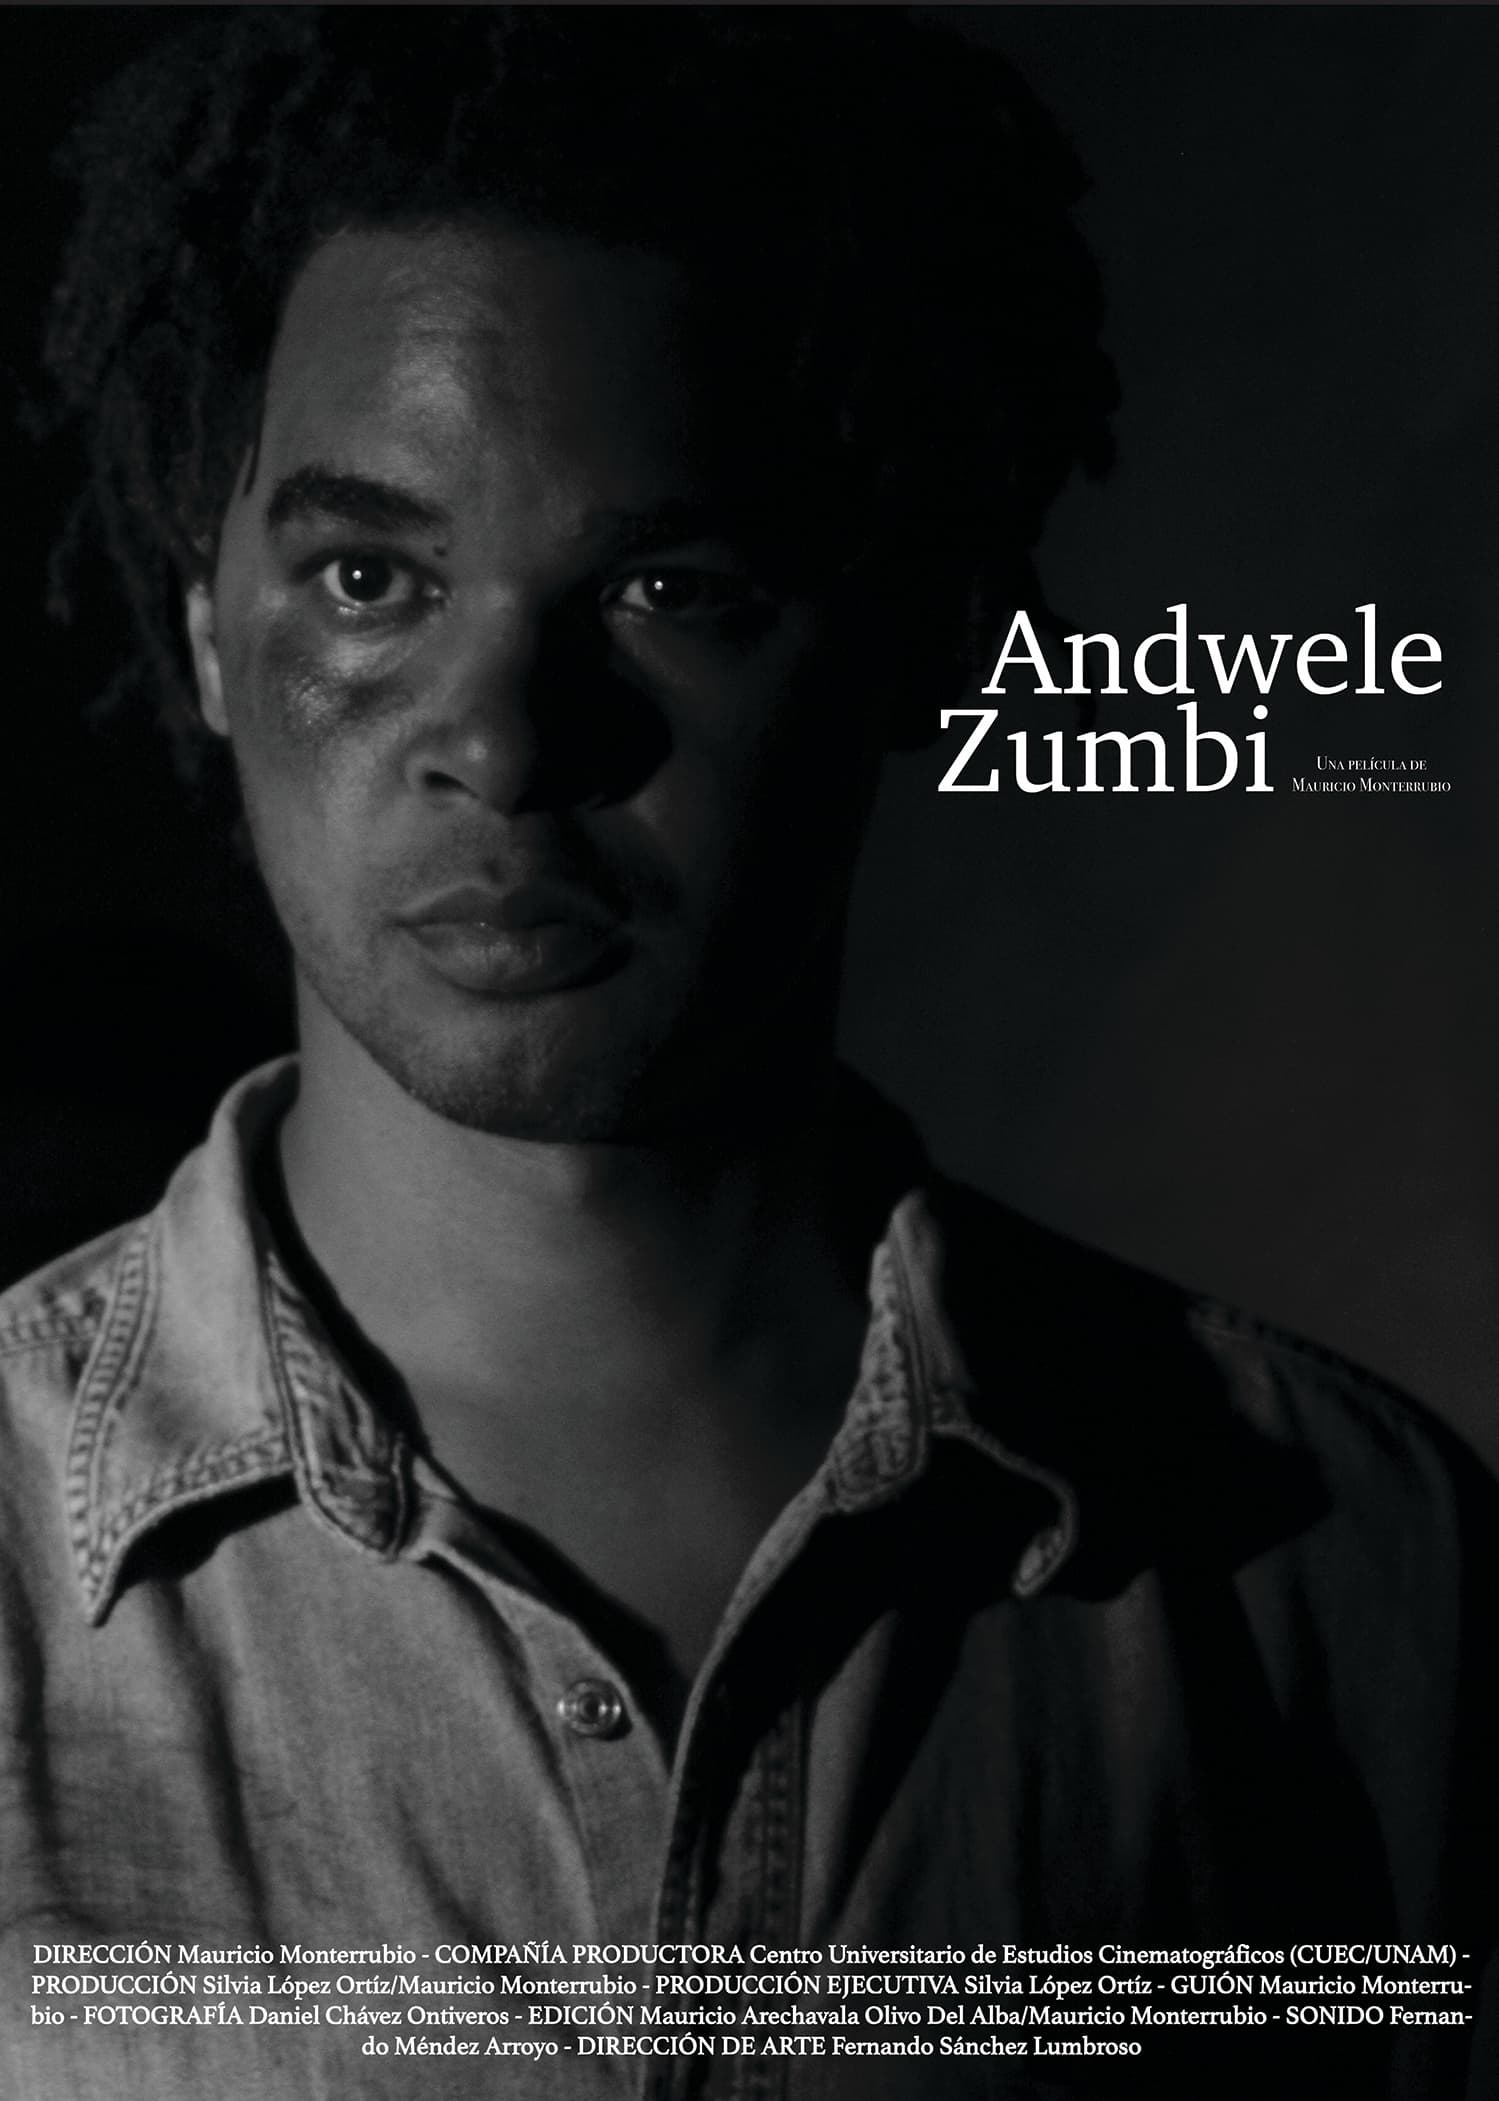 Andwele/Zumbi